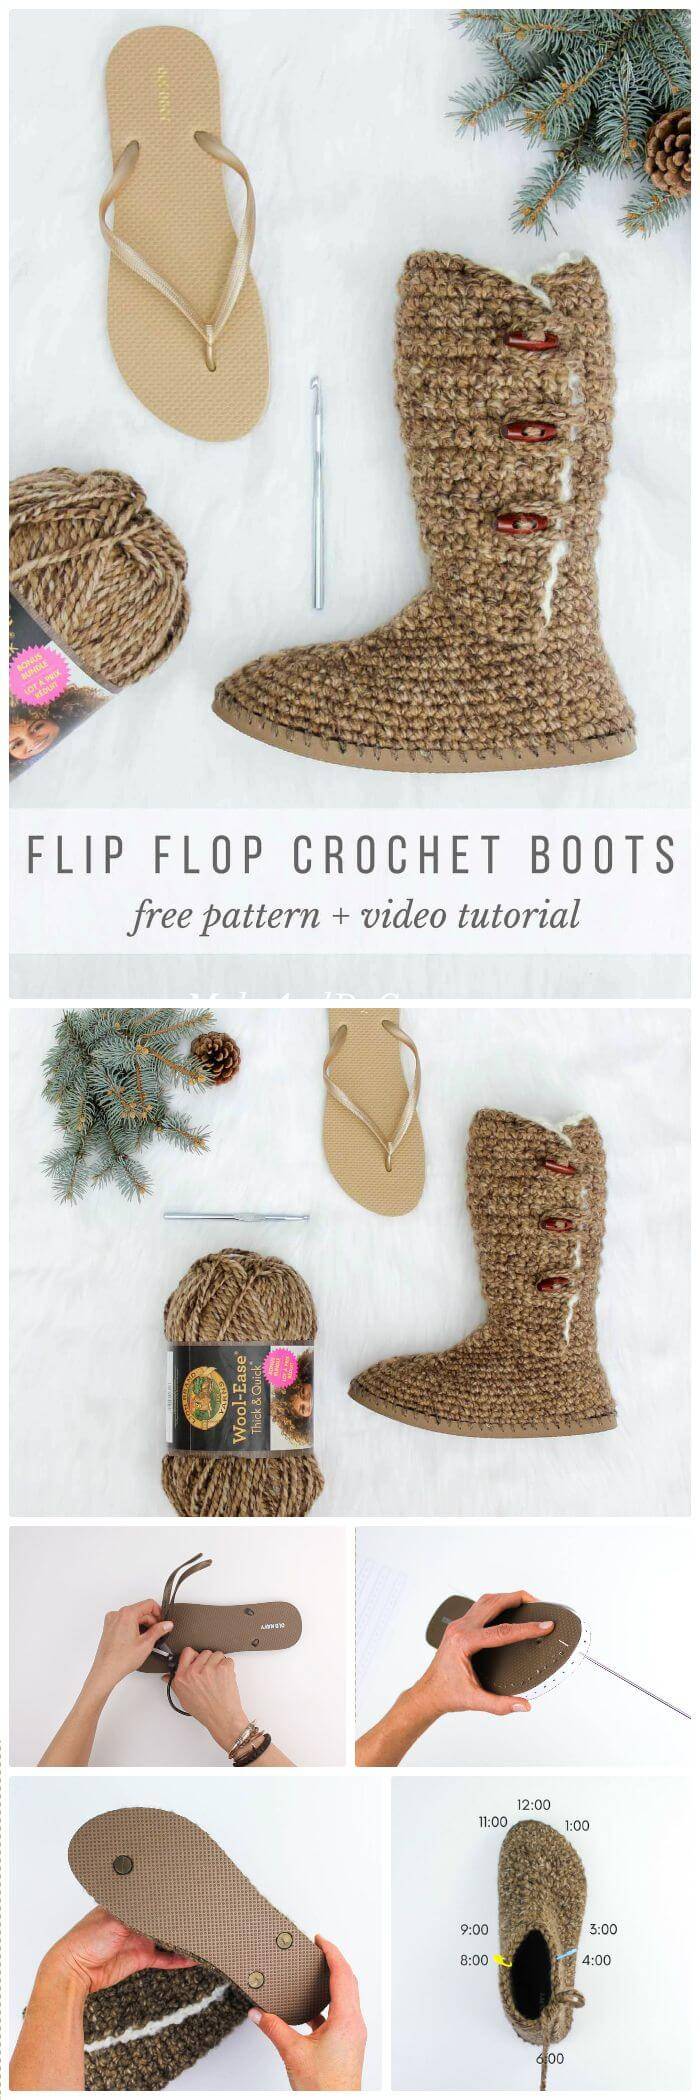 DIY “Breckenridge” Crochet Boots With Flip Flop Soles, crochet slipper using flip flop sole pattern